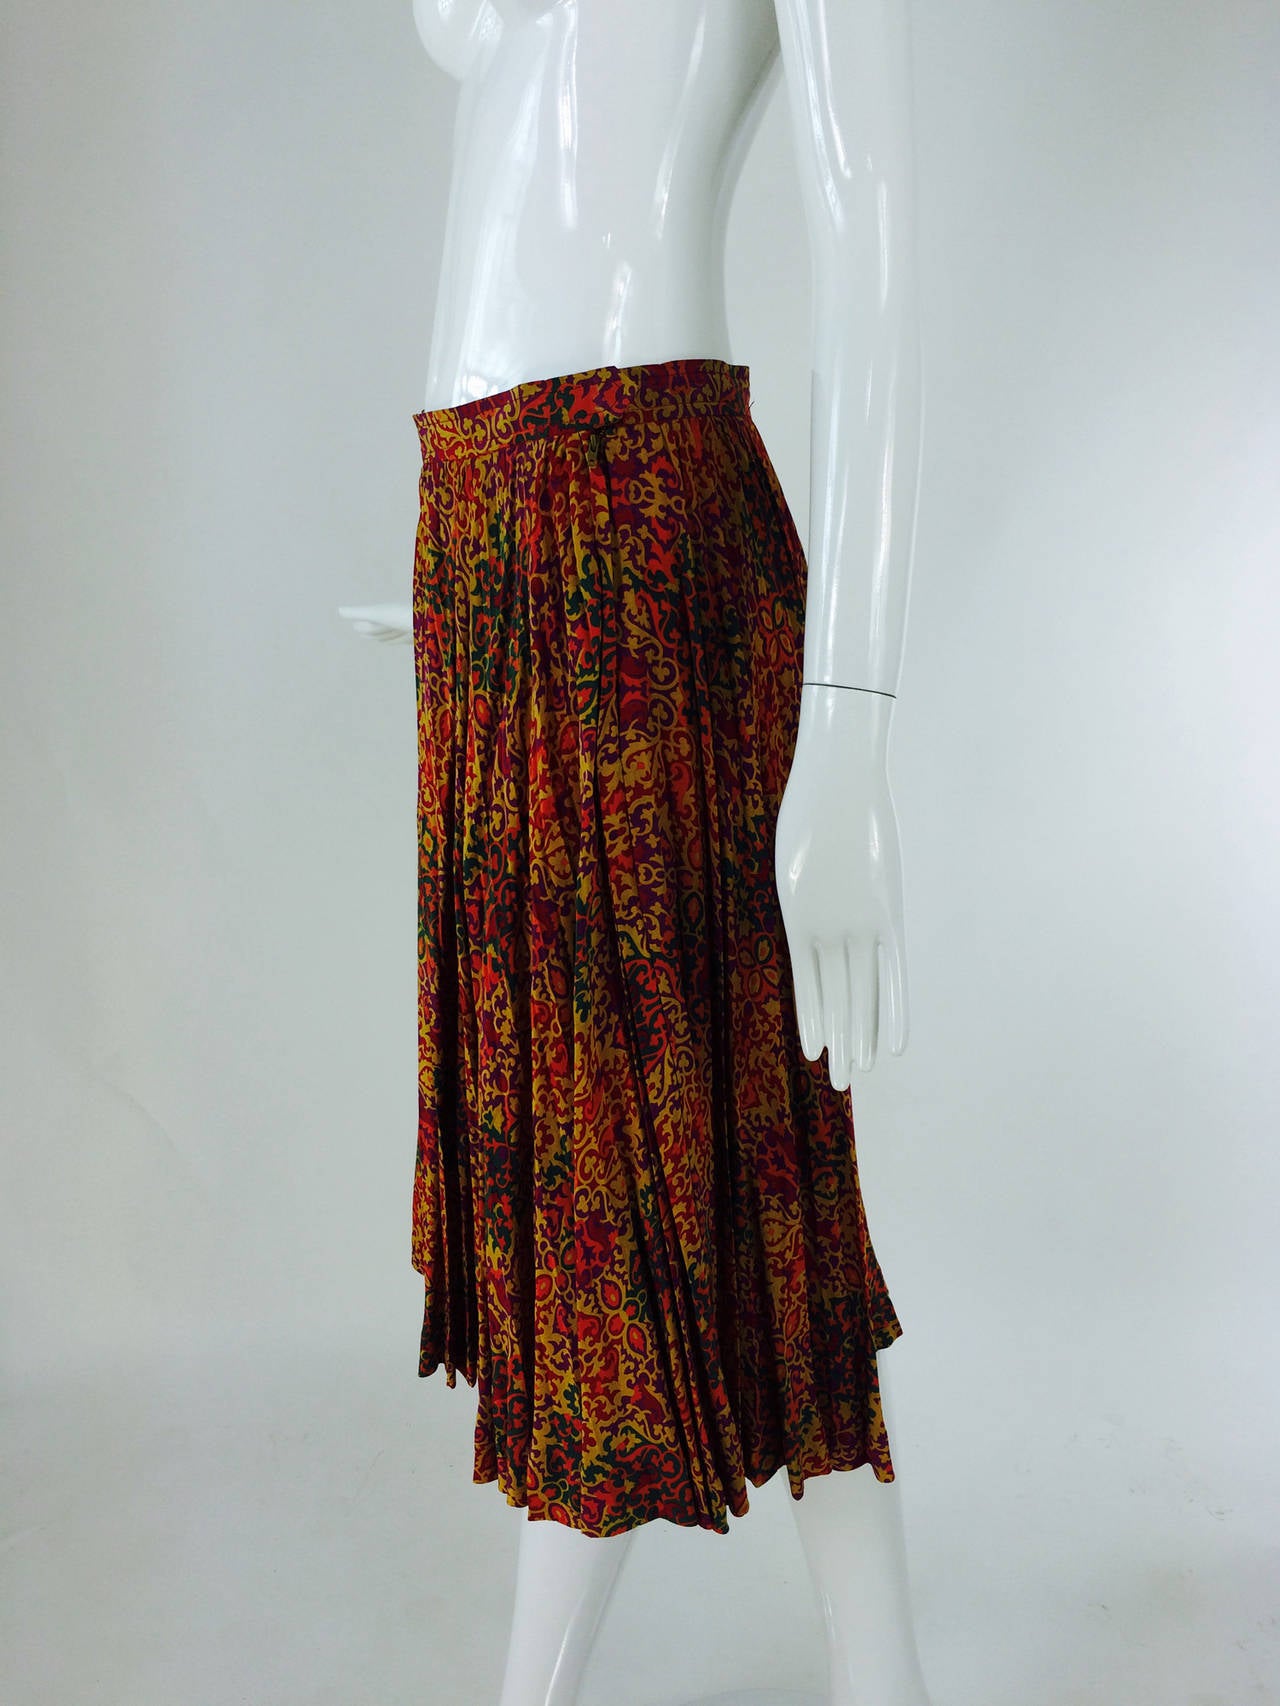 Yves St Laurent YSL Rive Gauche golden silk print knife pleated skirt 1970s 2